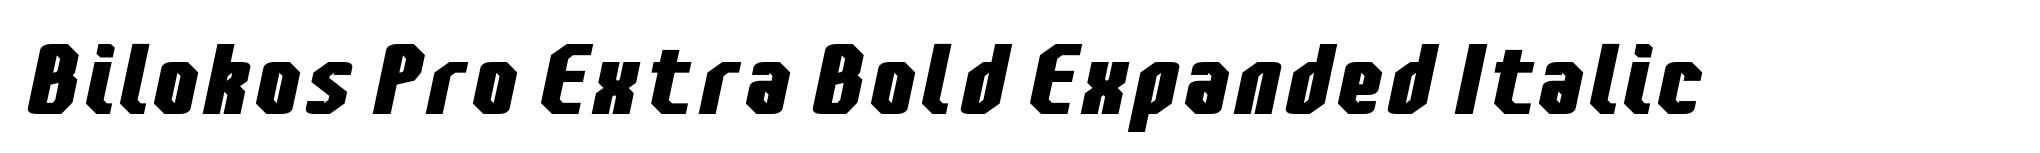 Bilokos Pro Extra Bold Expanded Italic image